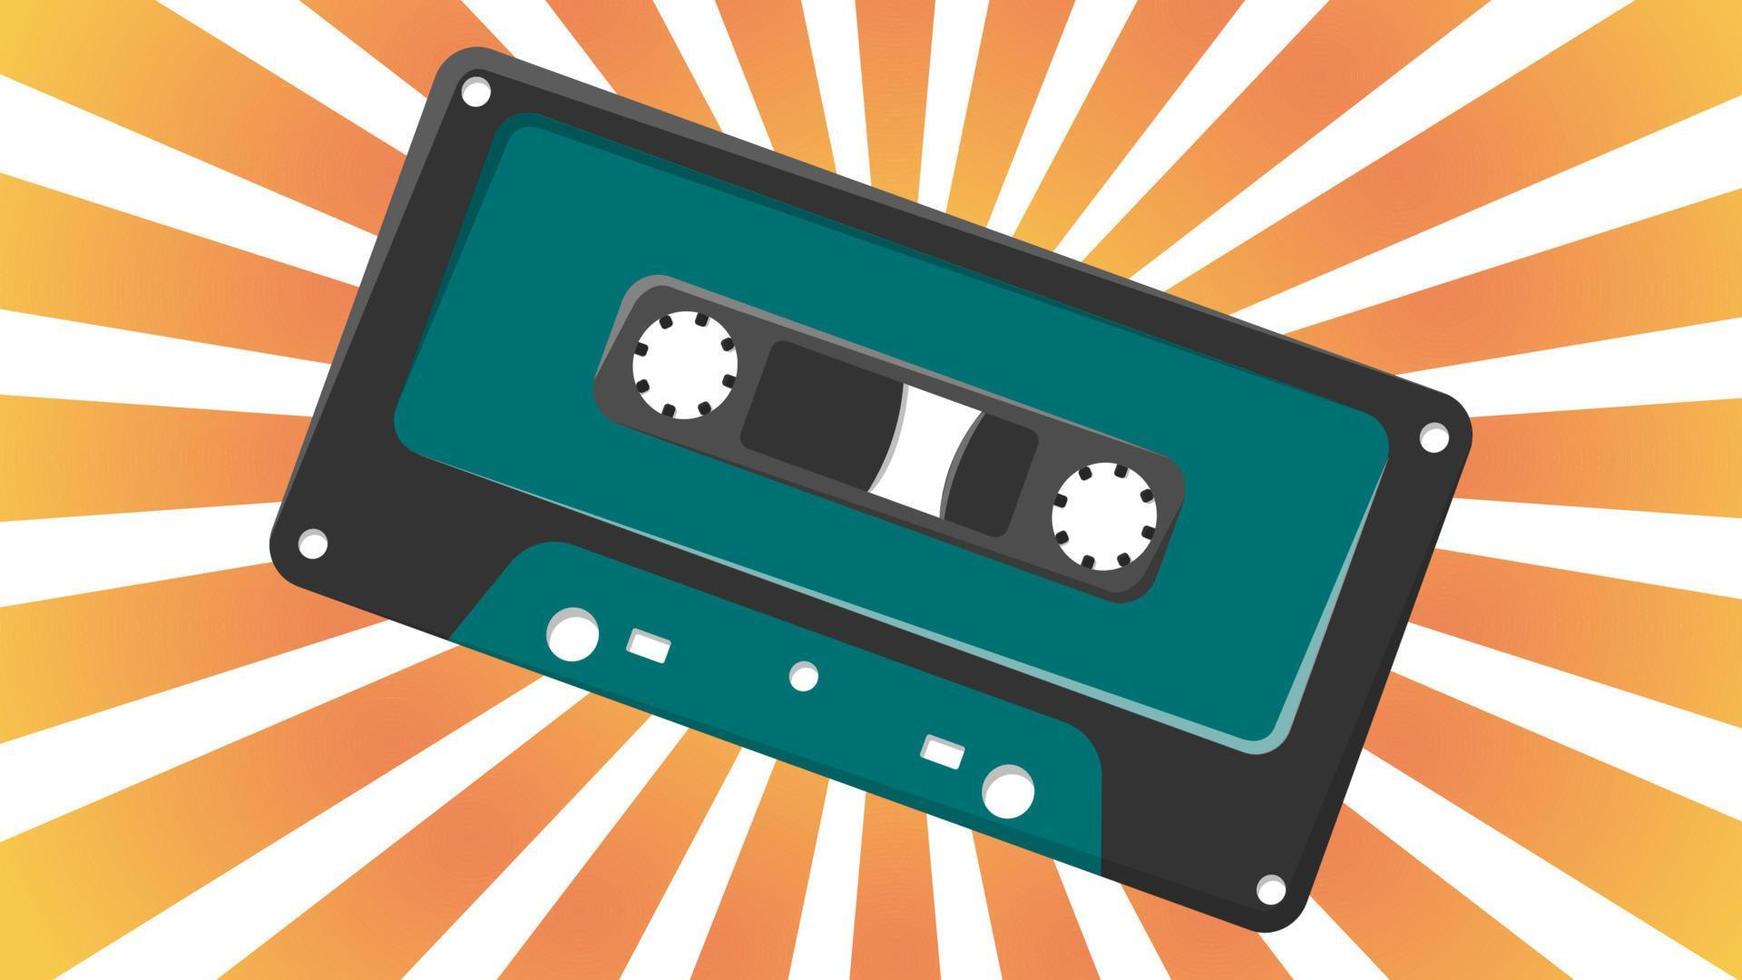 viejo casete de audio de música verde retro vintage para grabadora de cinta de audio con cinta magnética de los años 70, 80, 90 contra el fondo de los rayos naranjas del sol. ilustración vectorial vector